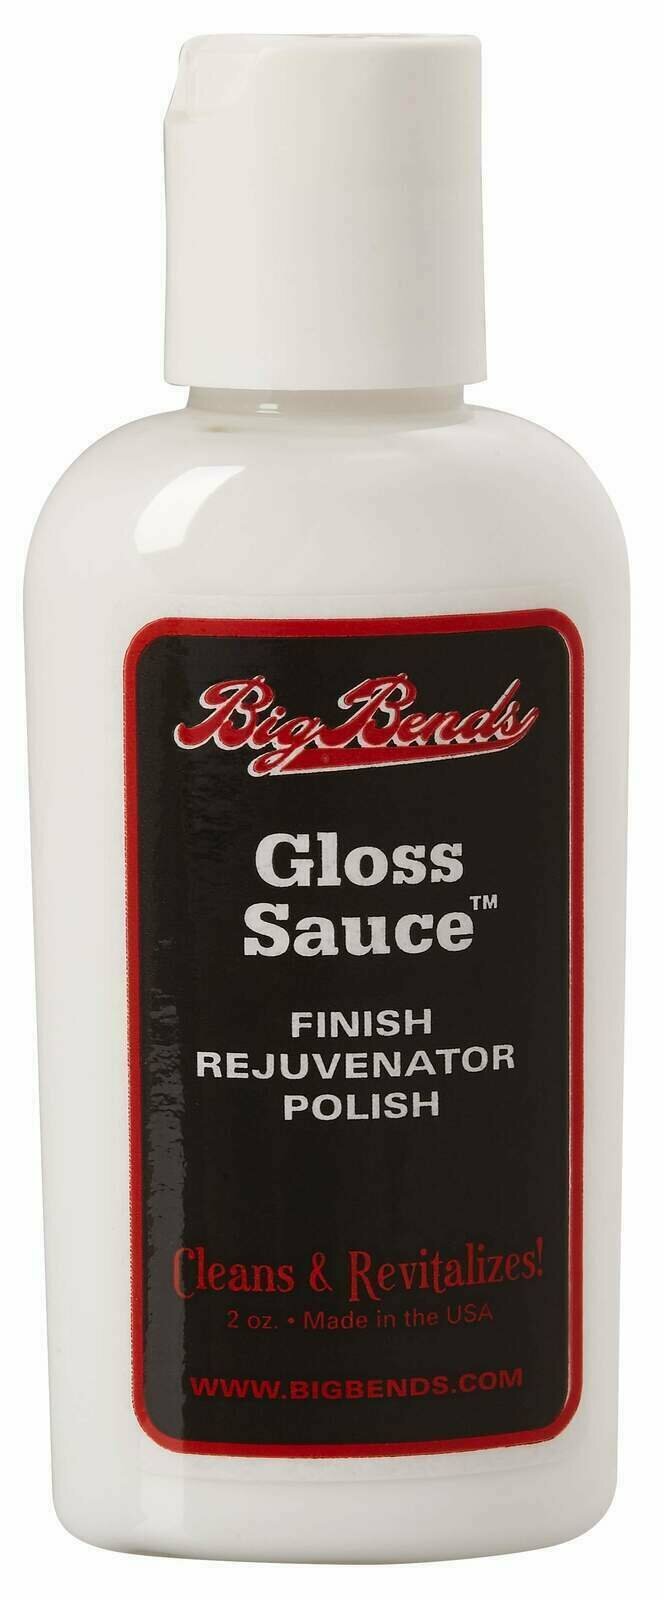 Sredstvo za čišćenje Big Bends Gloss Sauce Polish